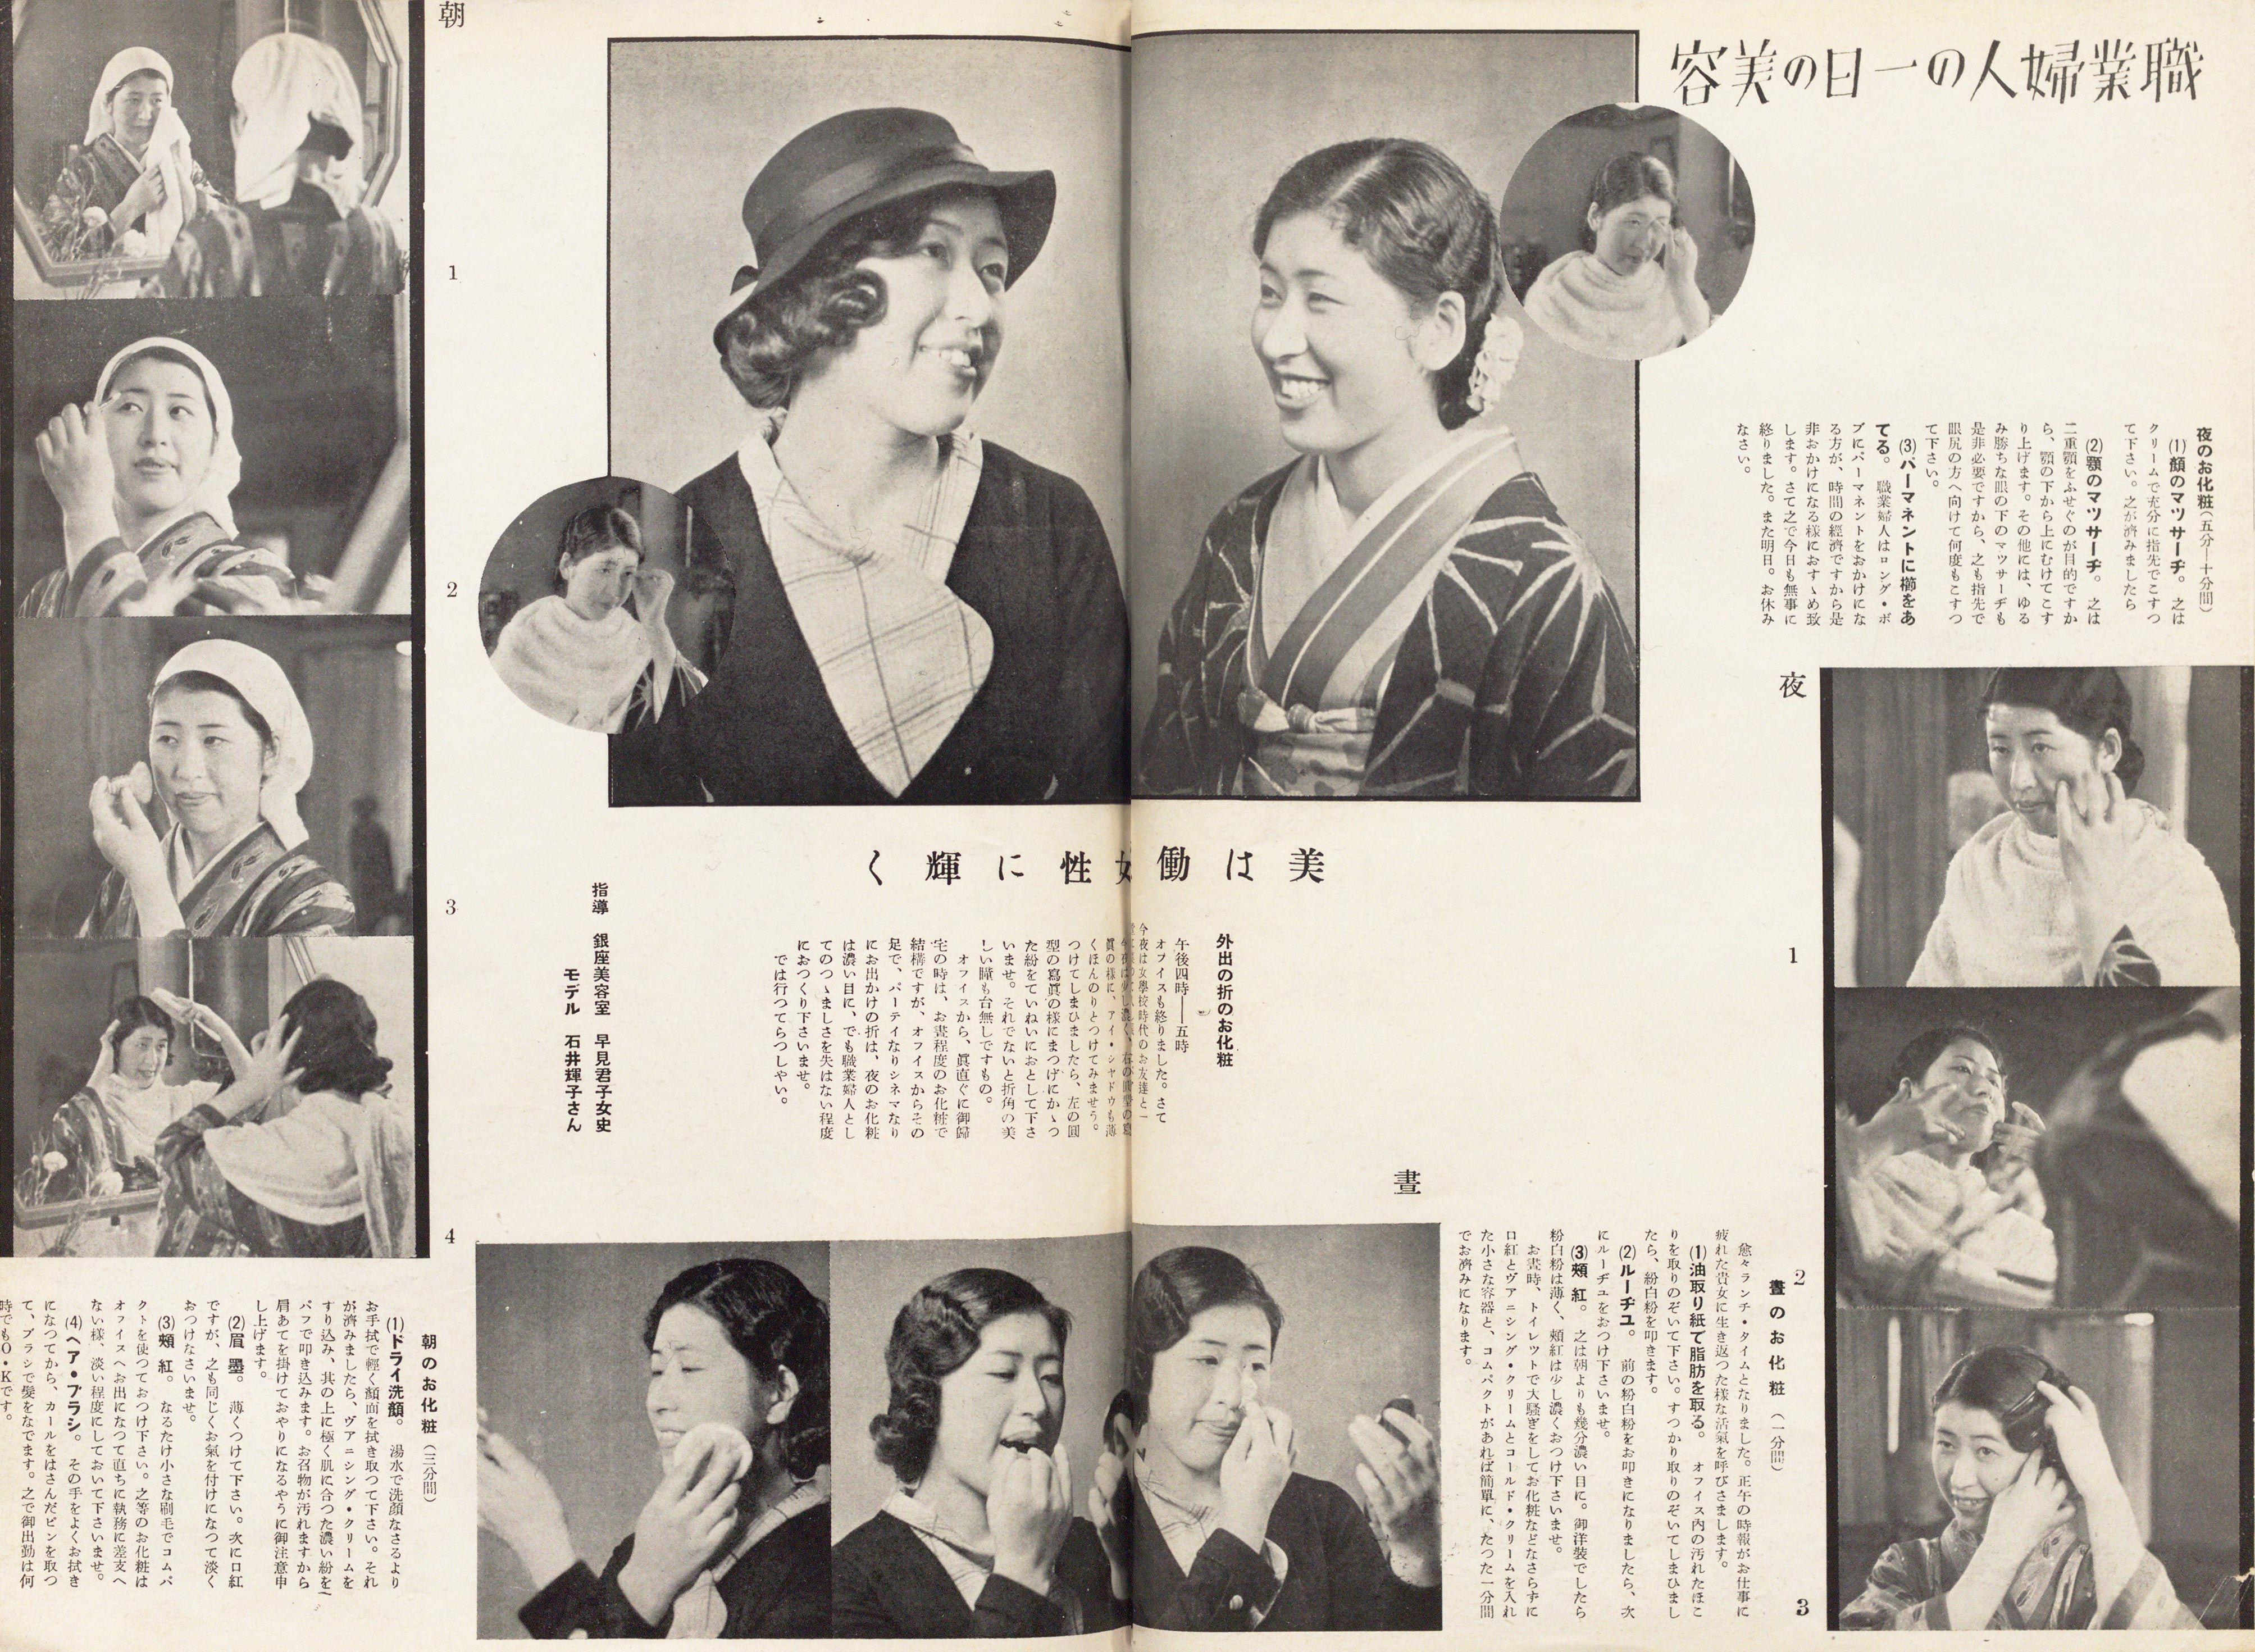 昭和初期 婦人画報 がおすすめした 初夏のお化粧法とは